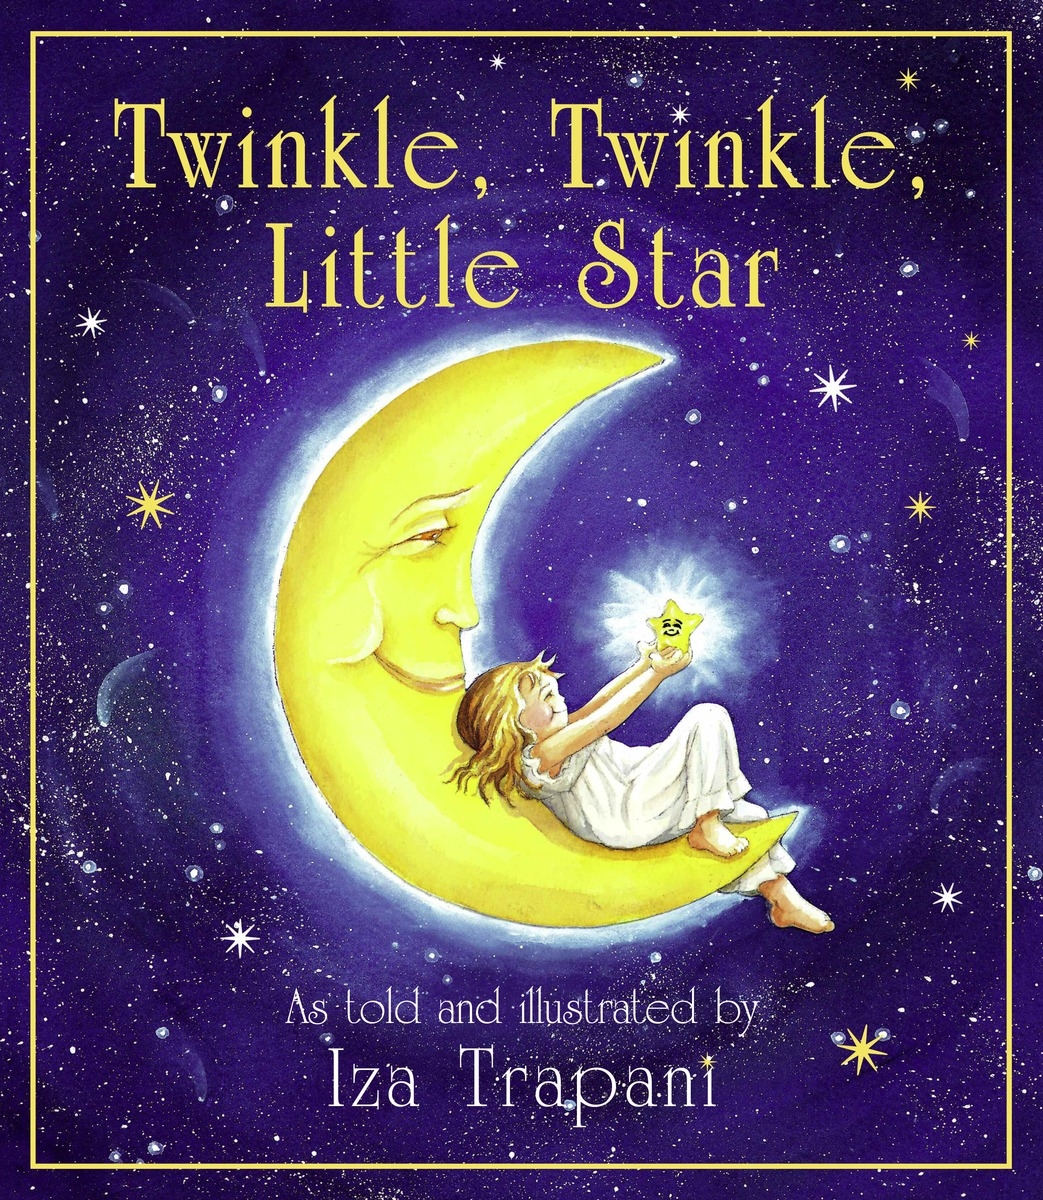 twinkle-twinkle-little-star-by-iza-trapani-penguin-books-australia